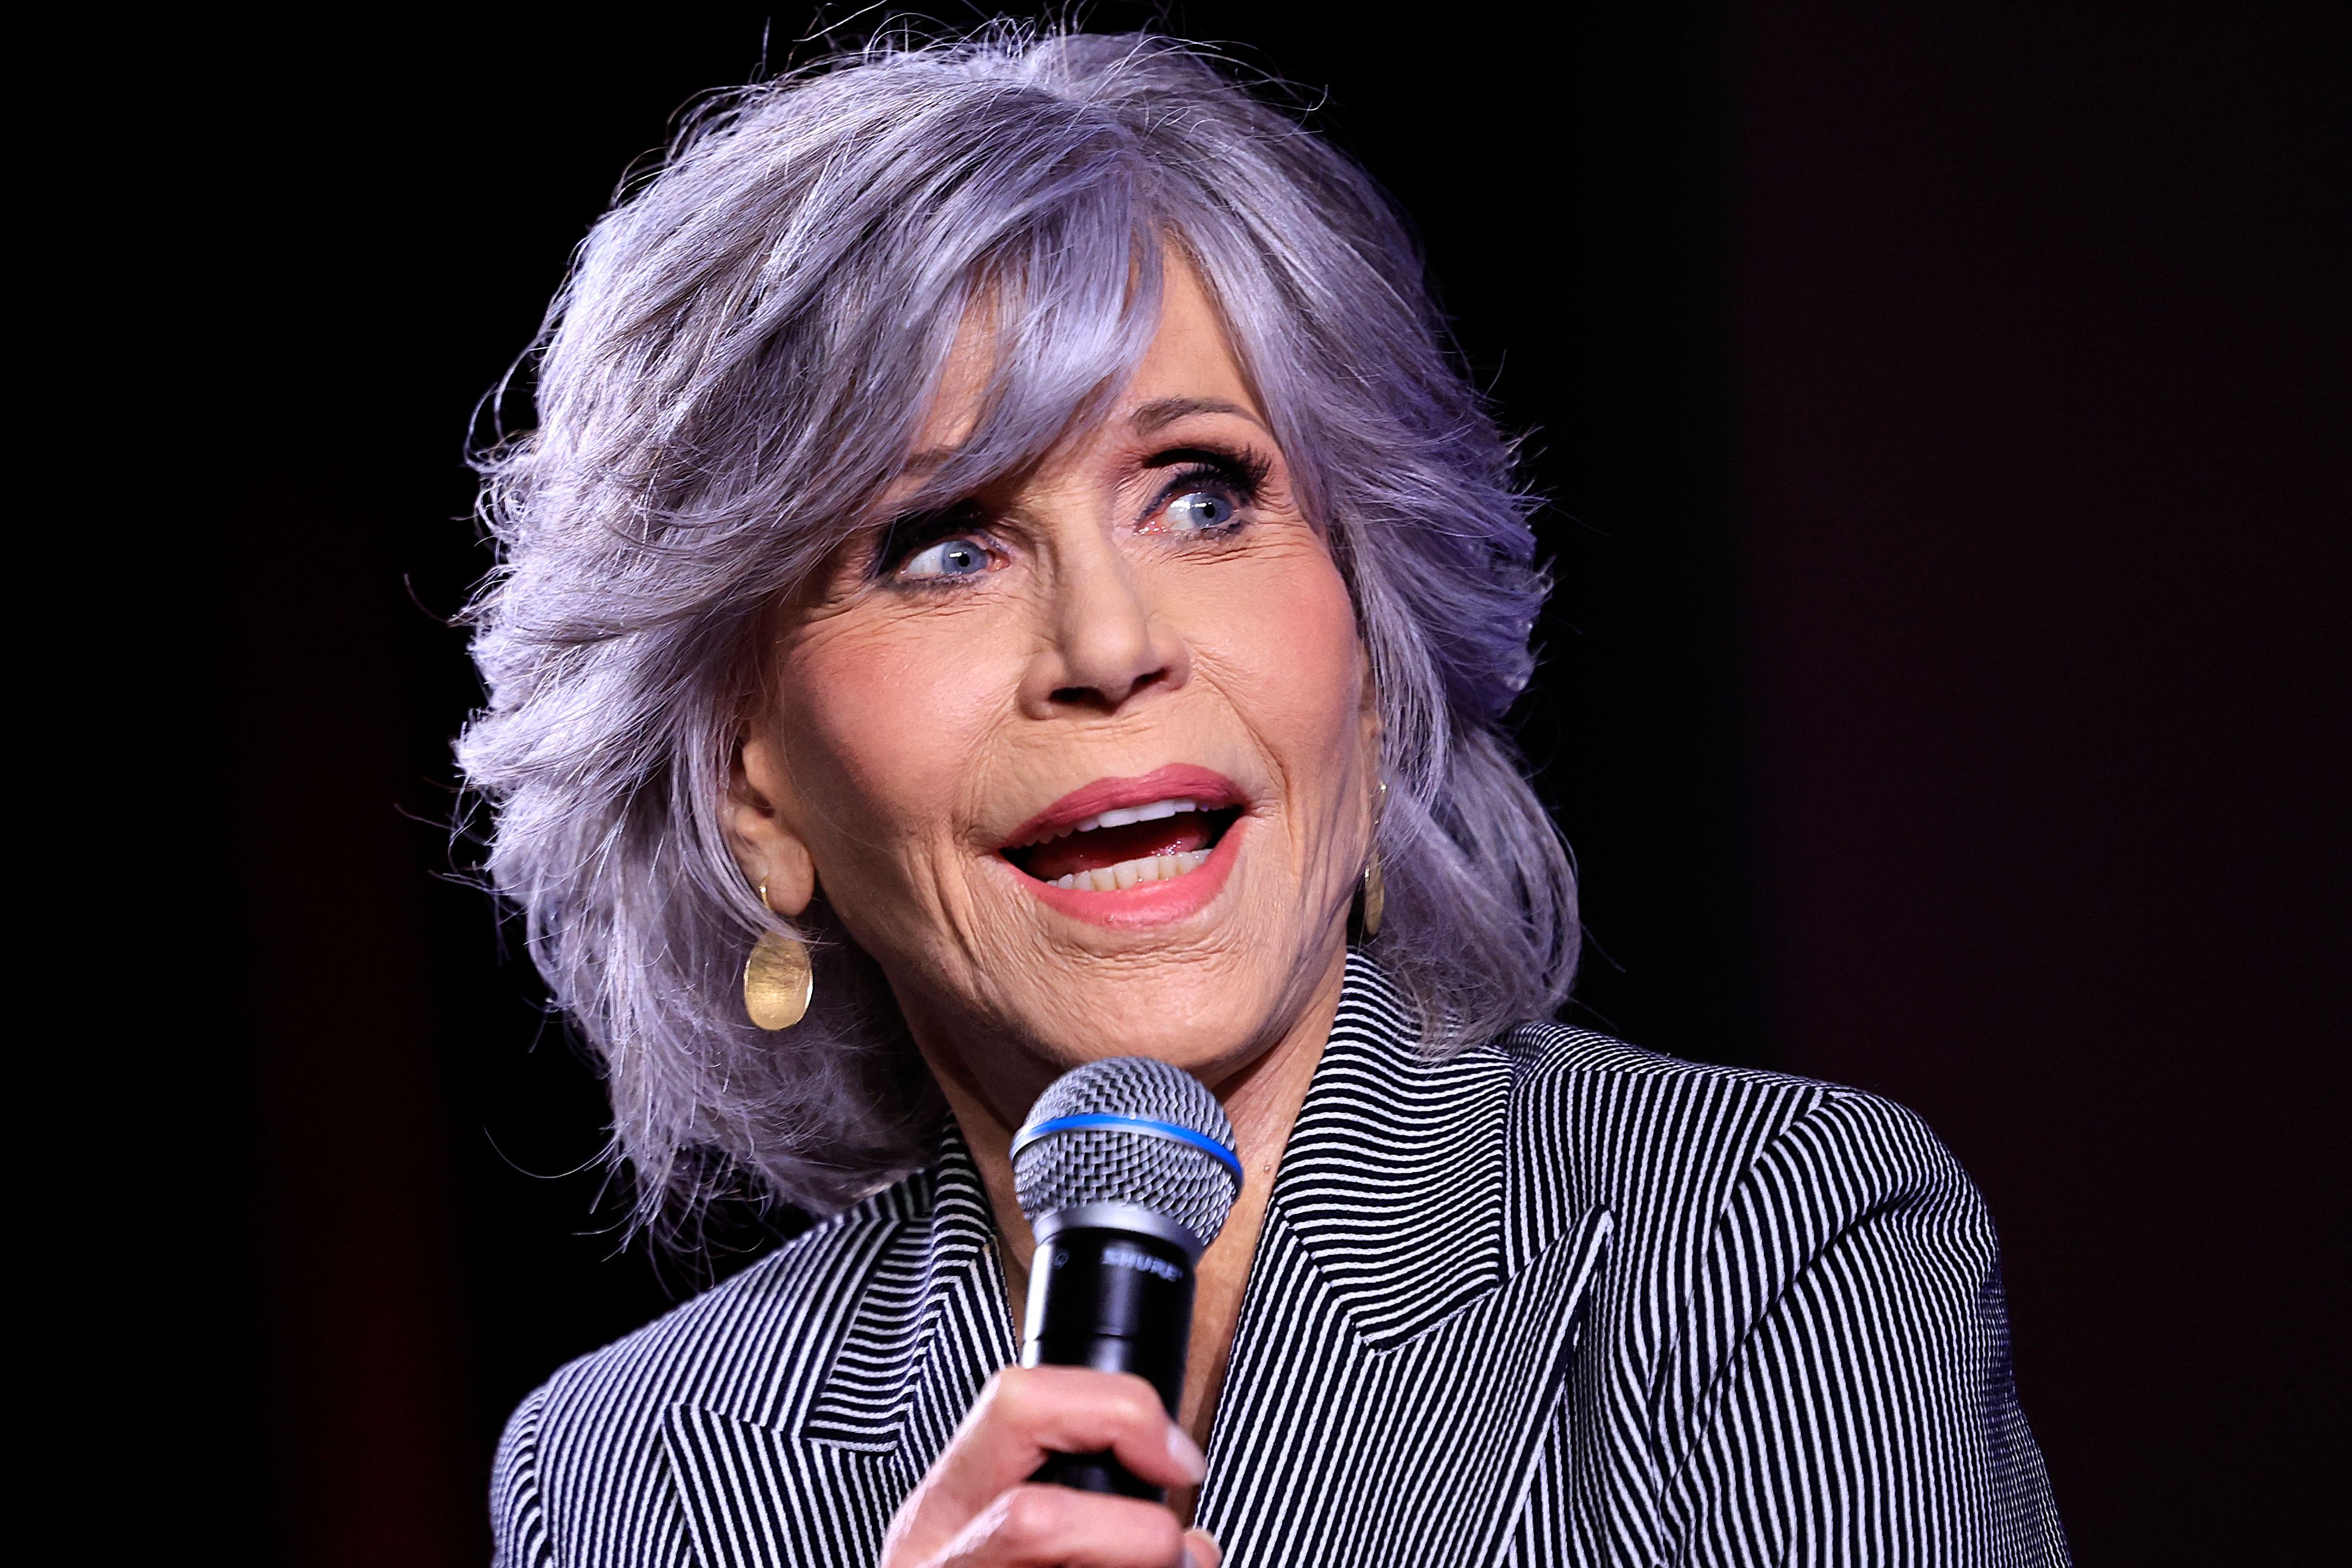 Jane Fonda busca amante de 20 años: “No me gusta la piel vieja”